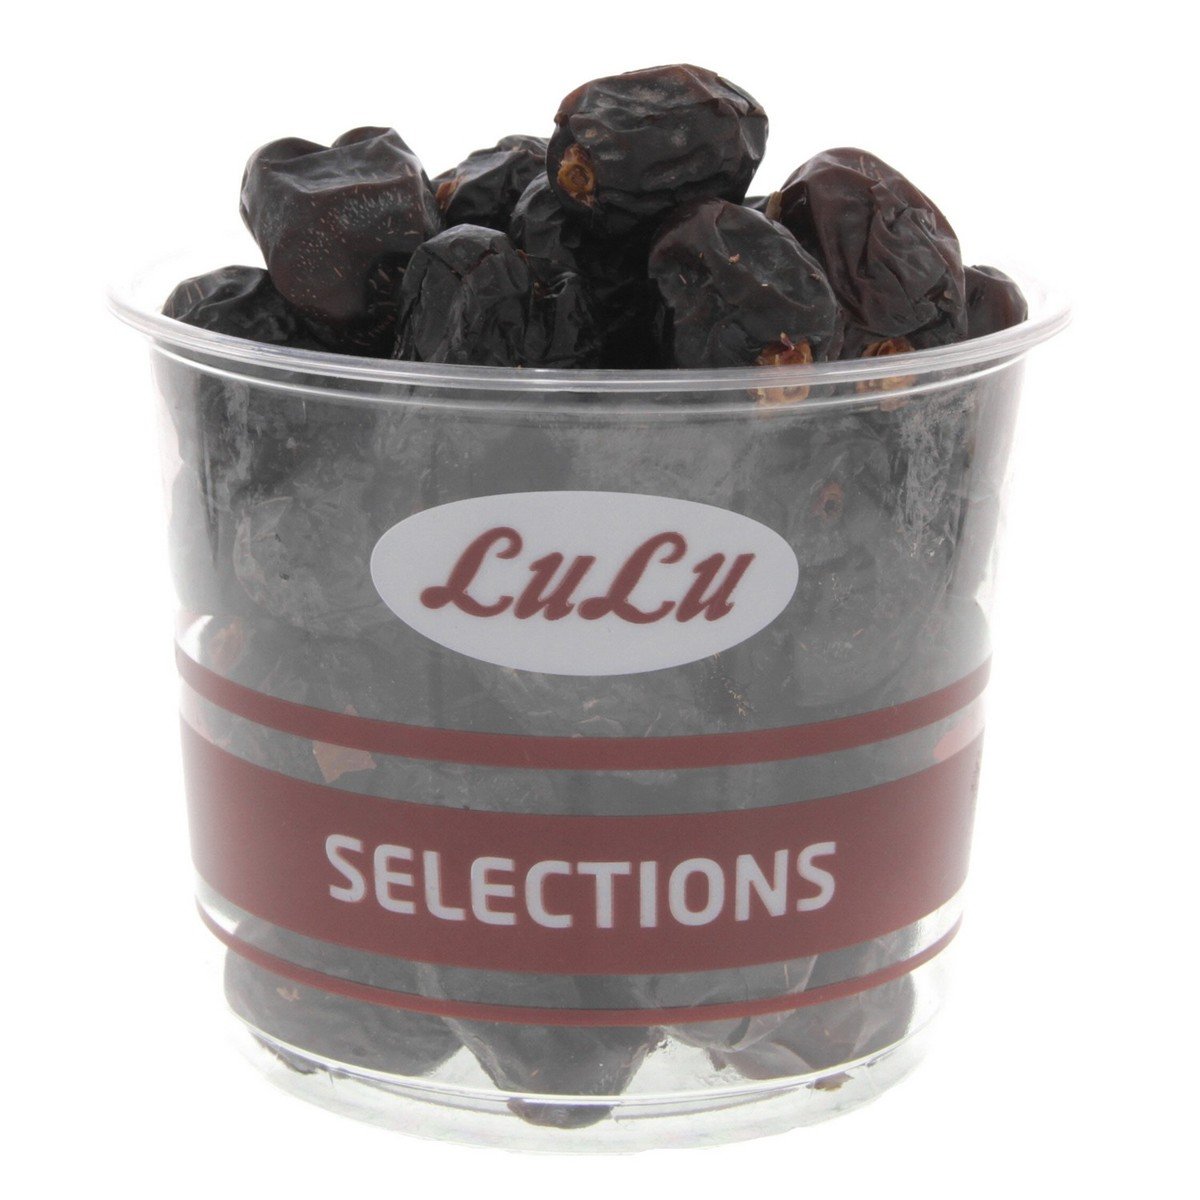 اشتري قم بشراء لولو تمر عجوة المدينة 1 كجم Online at Best Price من الموقع - من لولو هايبر ماركت Roastery Dried Fruit في السعودية